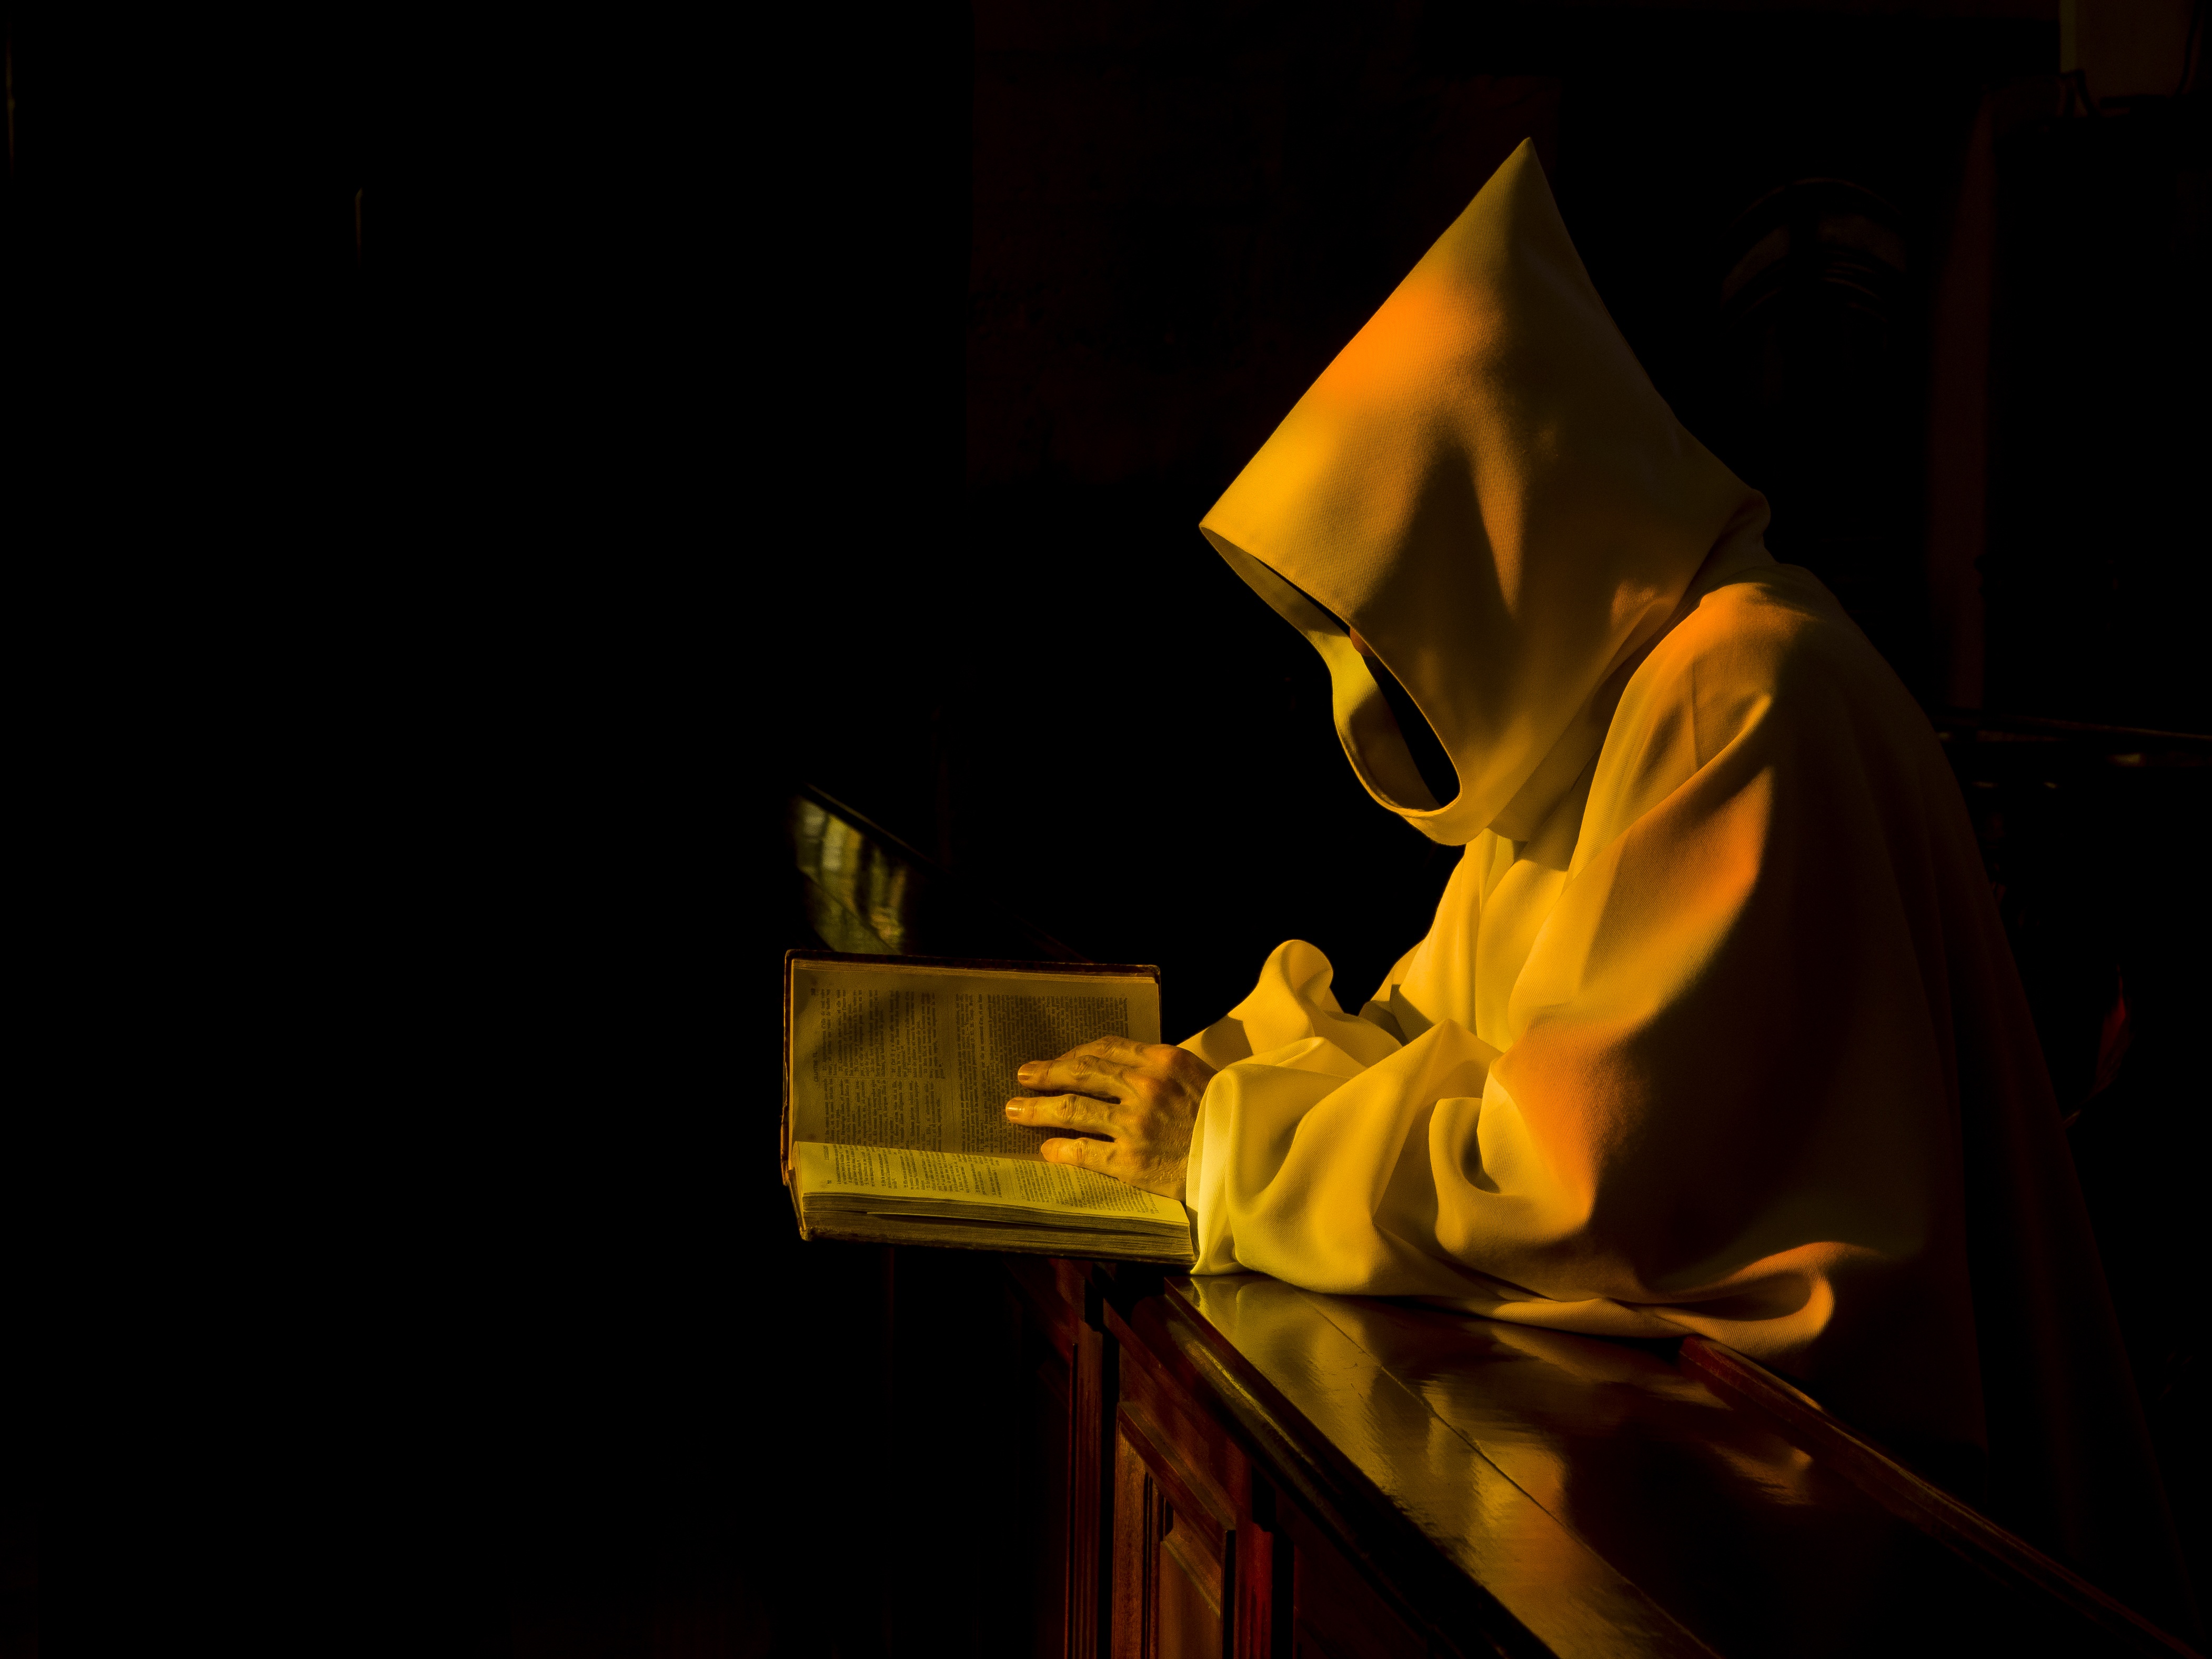 Католический монах в капюшоне